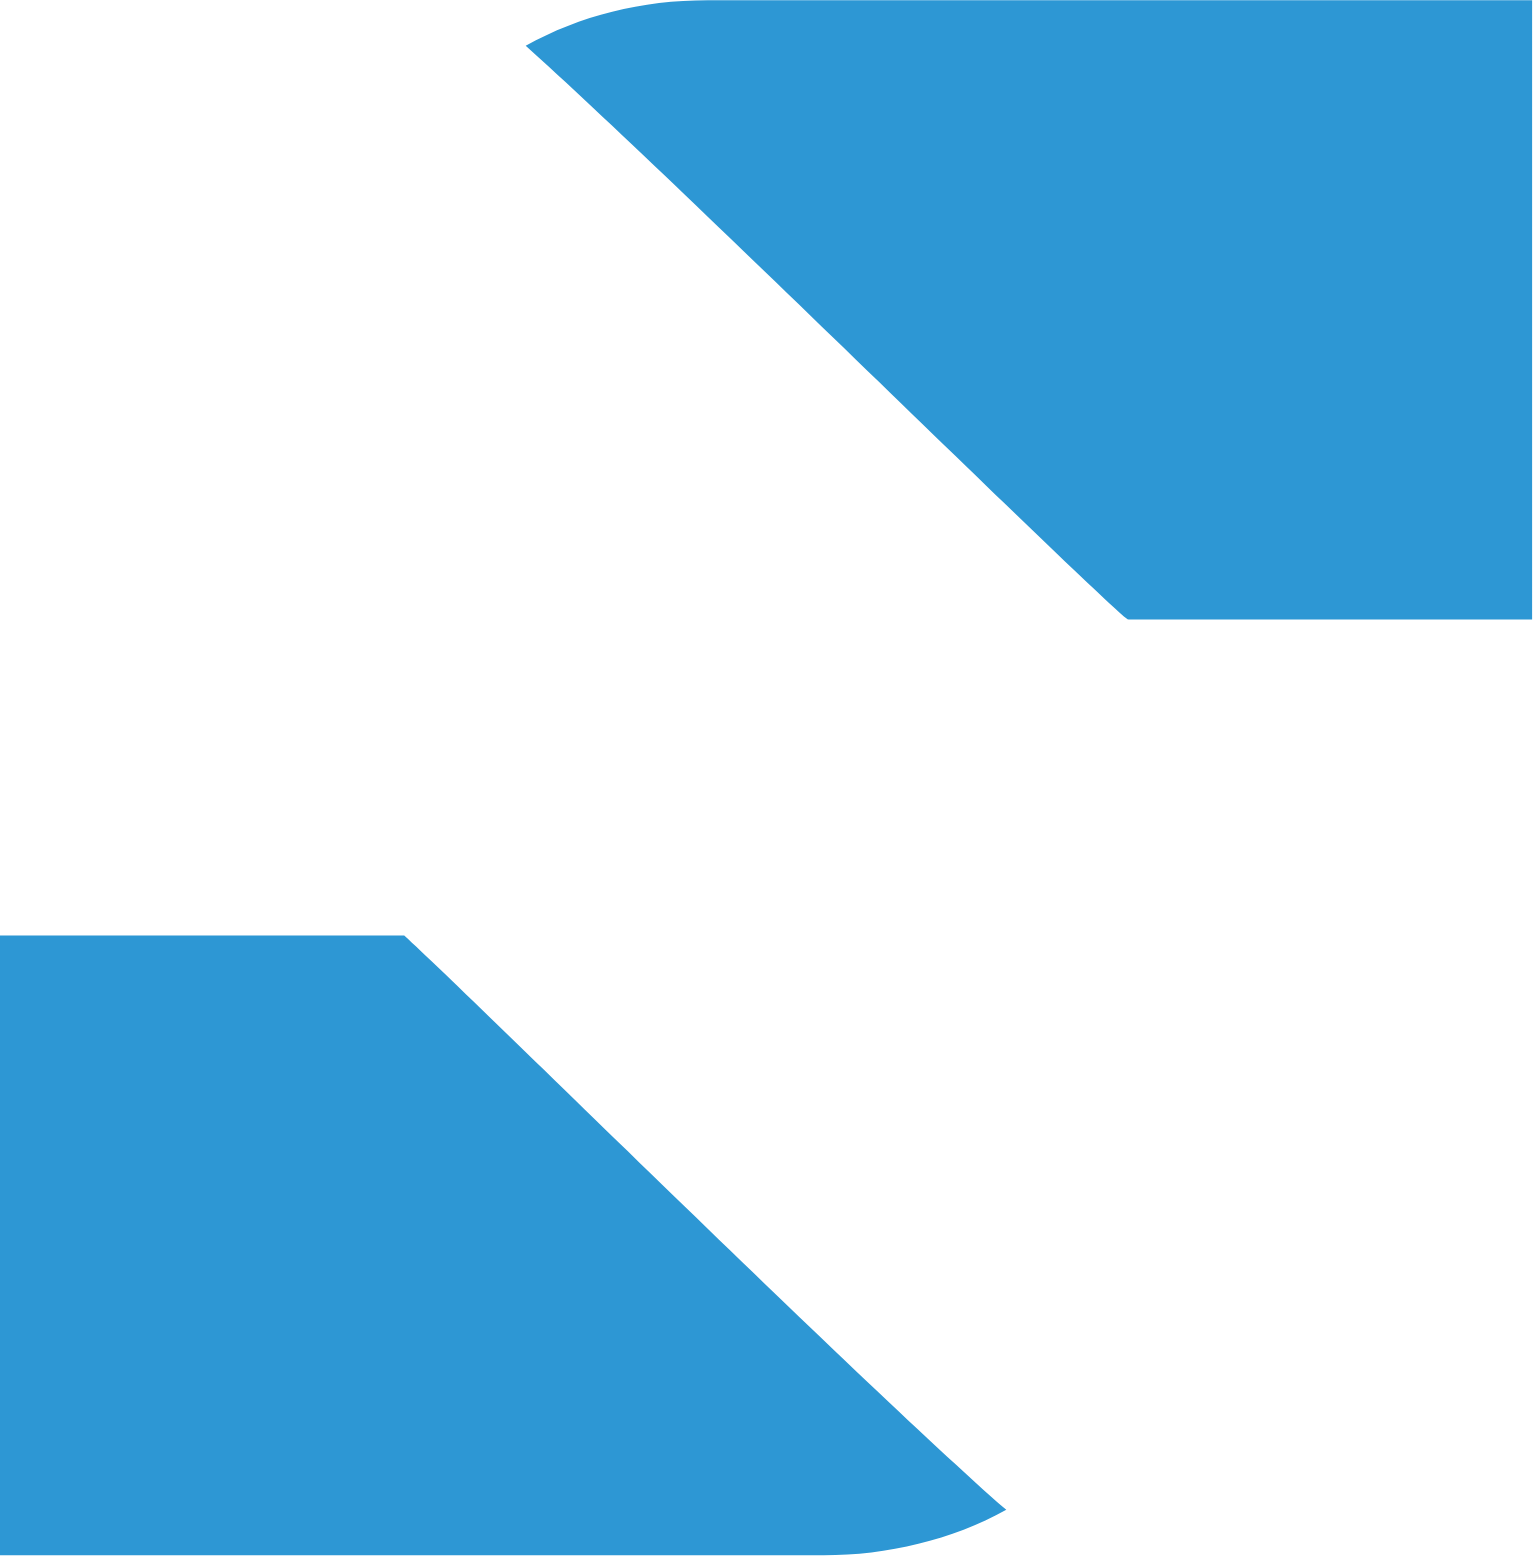 SIMPAR logo for dark backgrounds (transparent PNG)